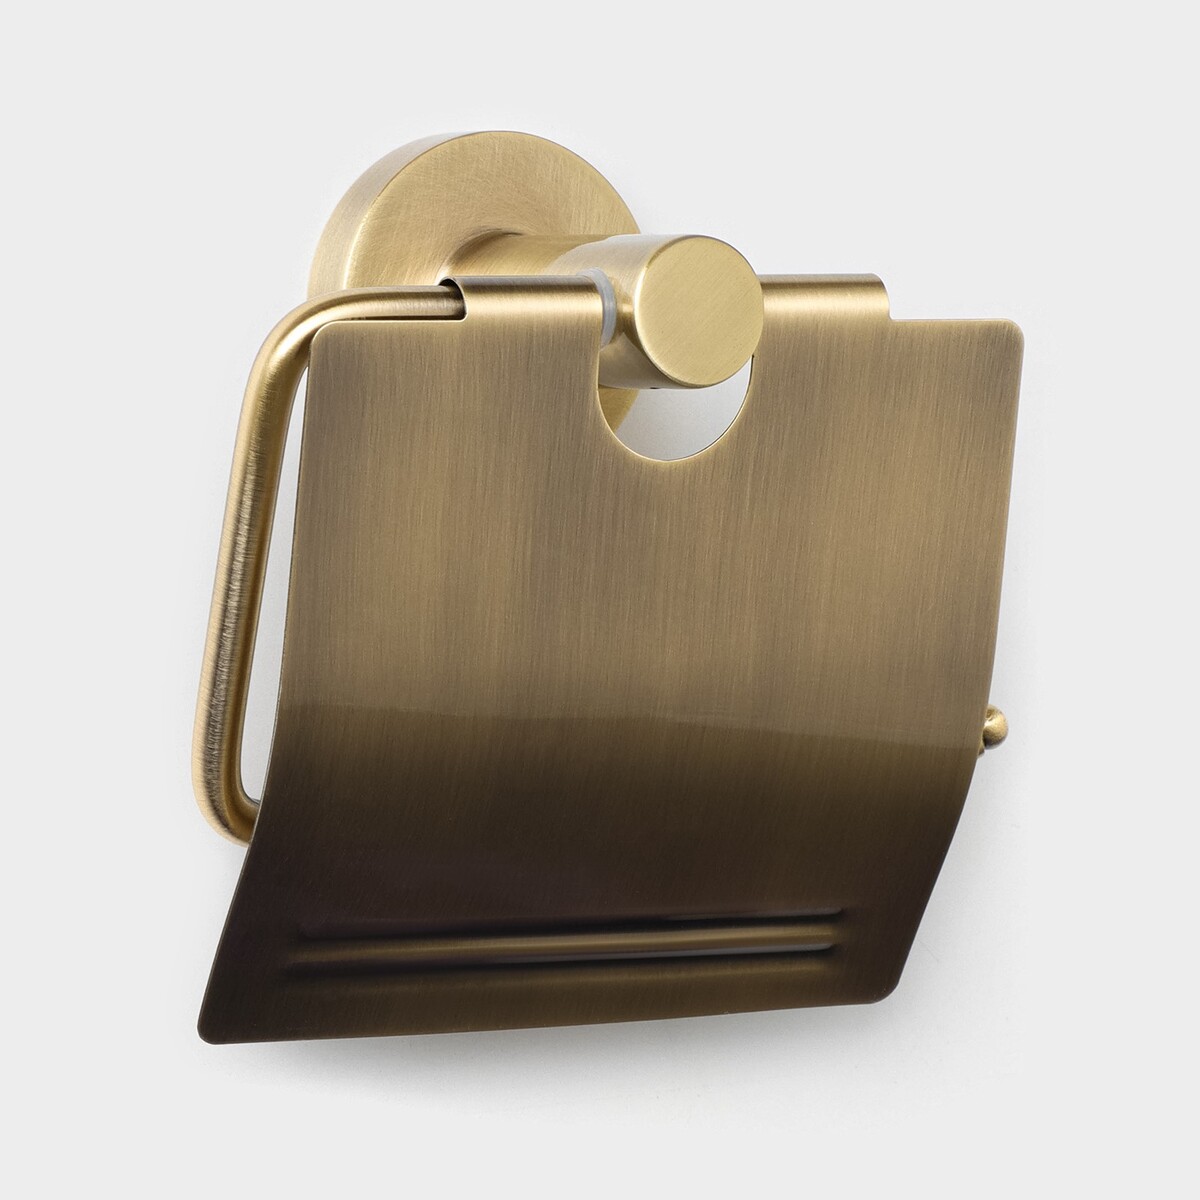 Держатель для туалетной бумаги с крышкой штольц stölz bacic, серия bronze форма для выпечки 29 см la cucina bronze